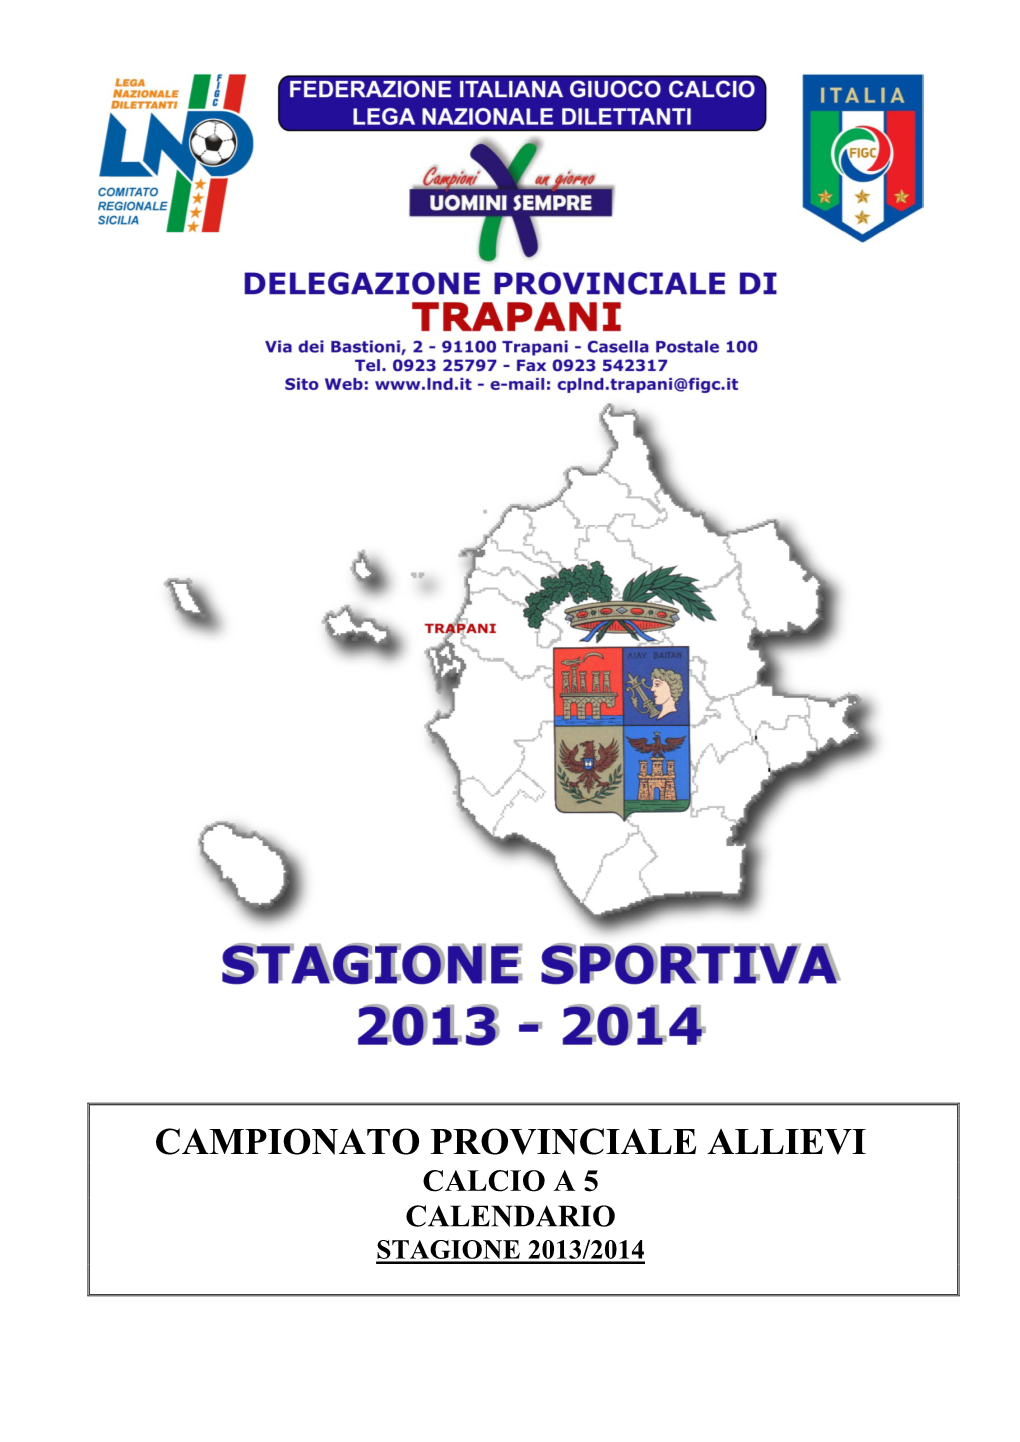 Campionato Provinciale Allievi Calcio a 5 Calendario Stagione 2013/2014